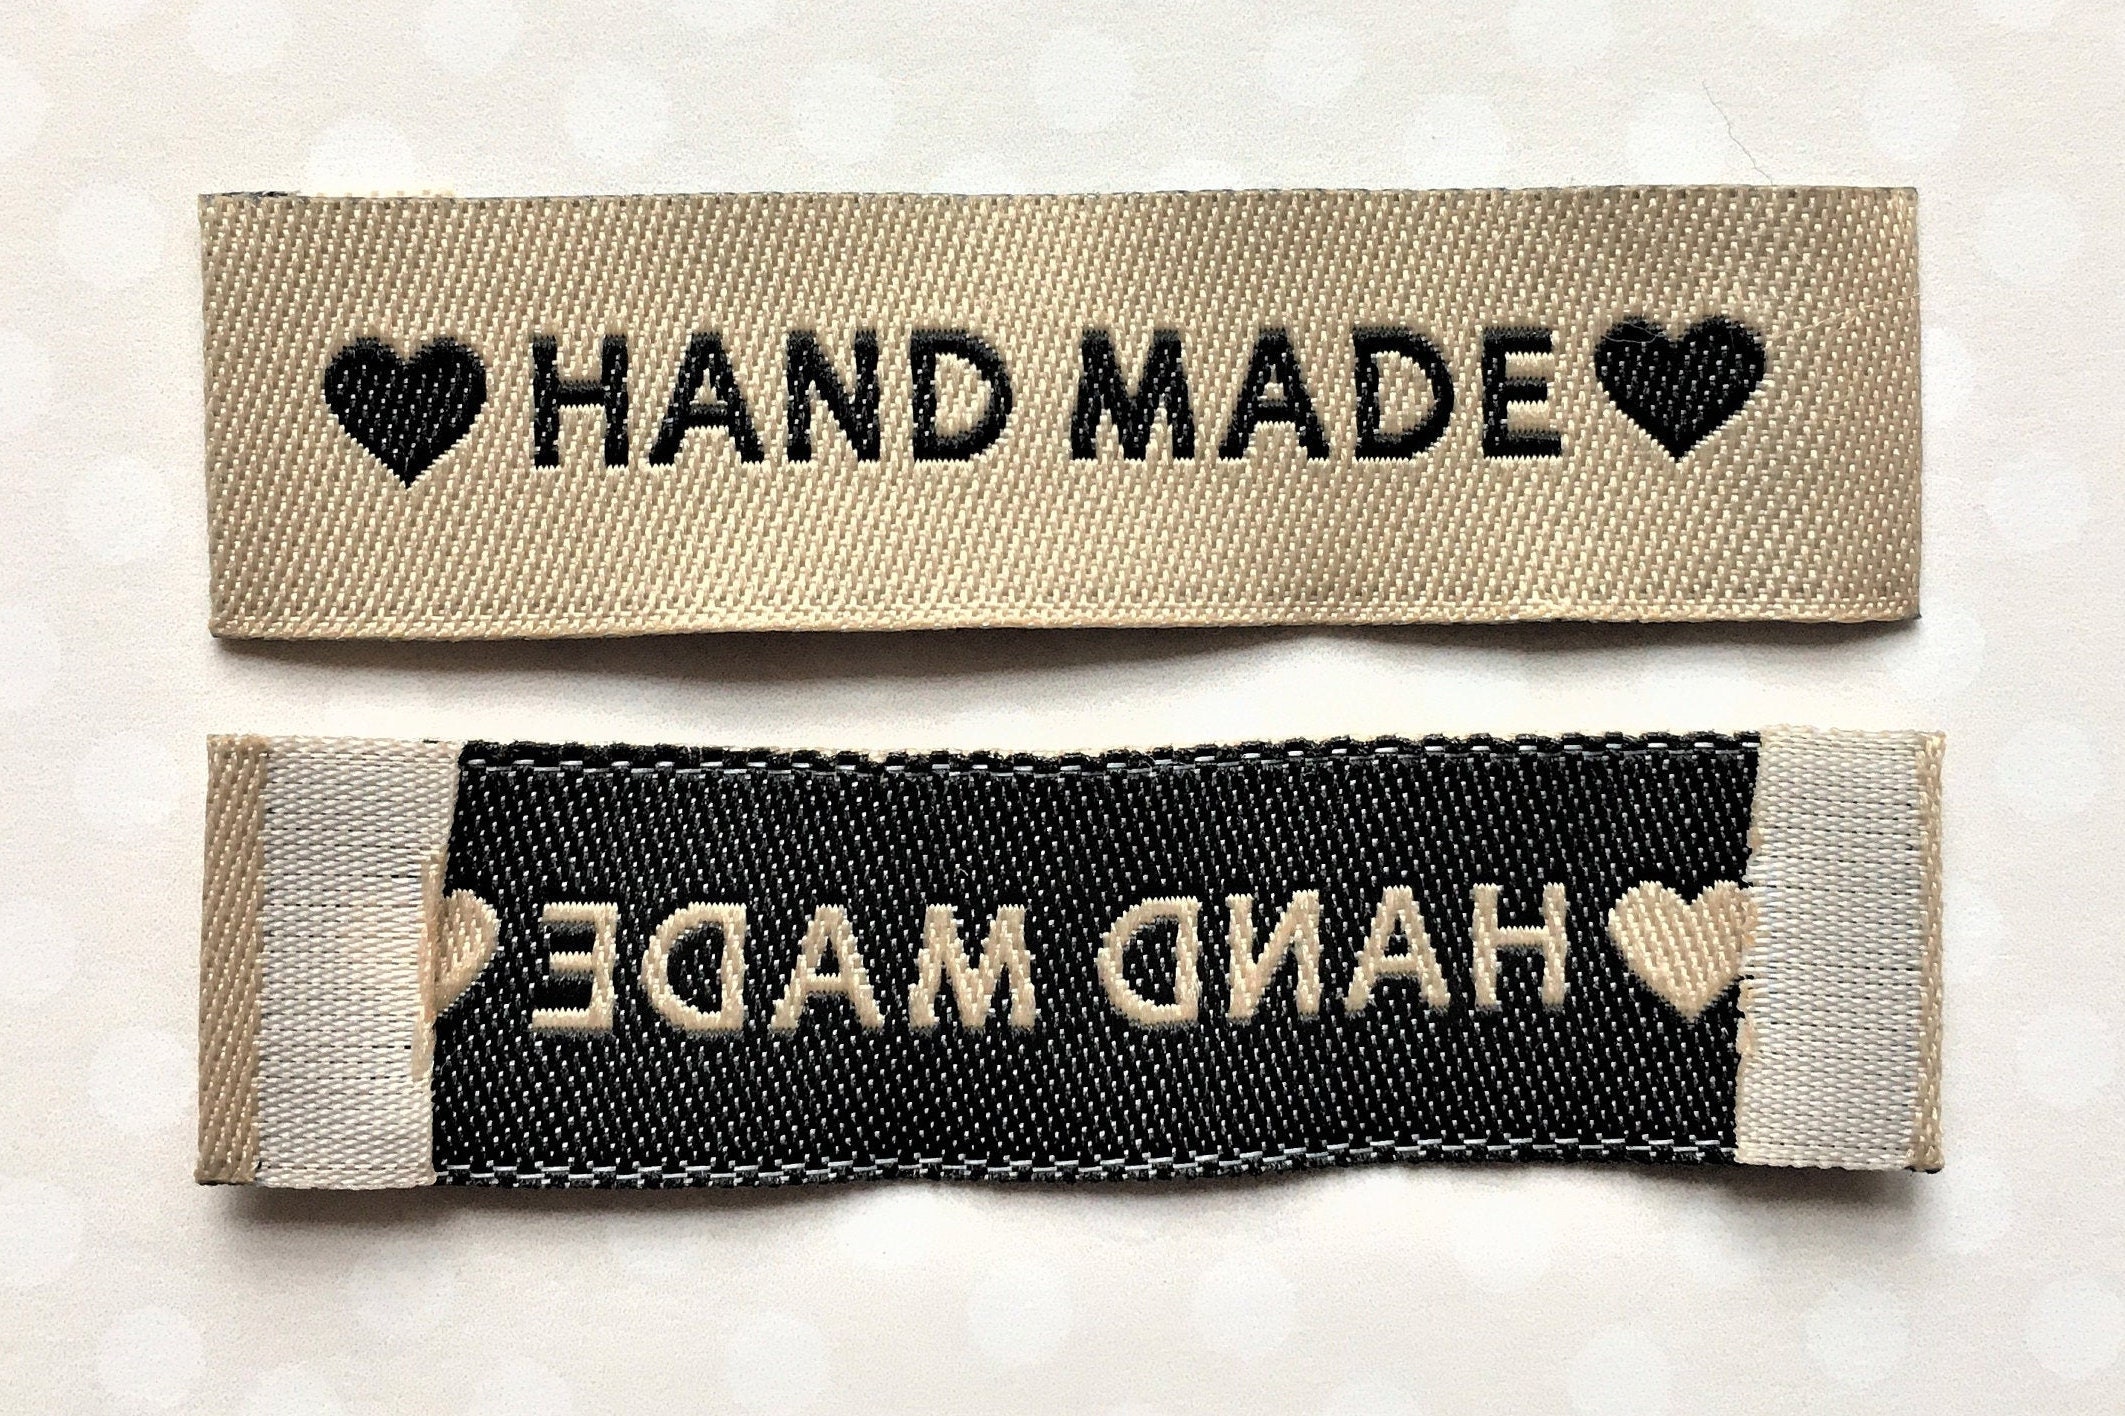 Etiquetas de tela - Handmade - 5 cm - 10 unidades, Accesorios